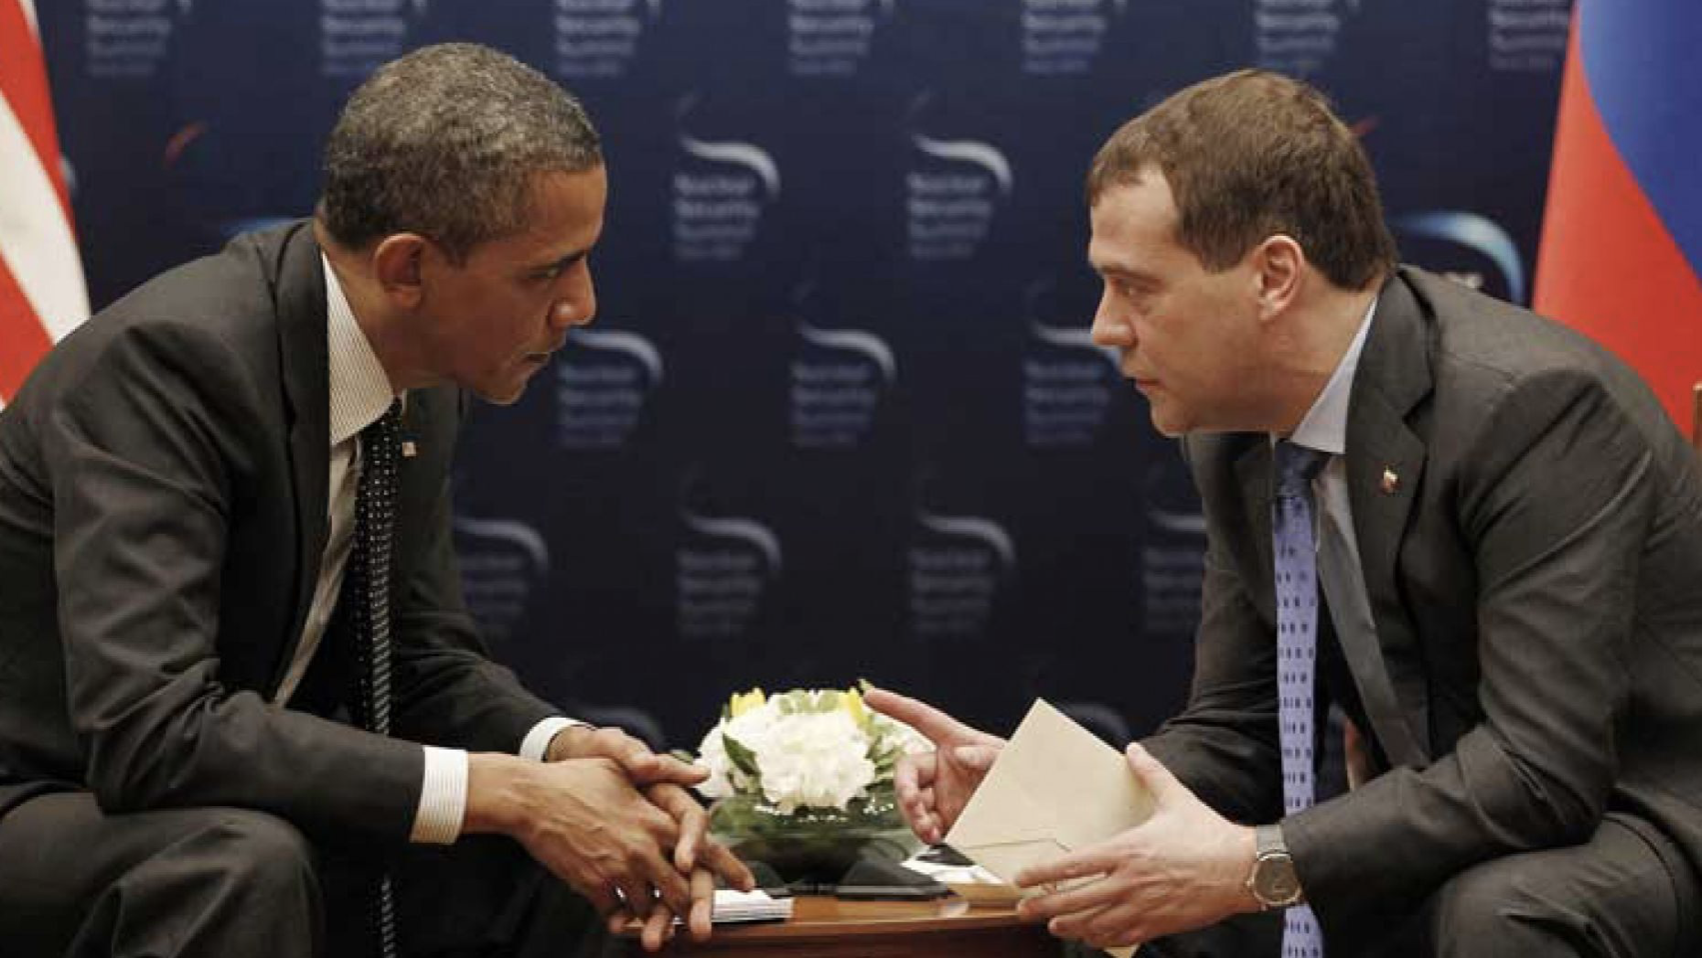 Obama in open mic gaffe w Dmitry Medvedev